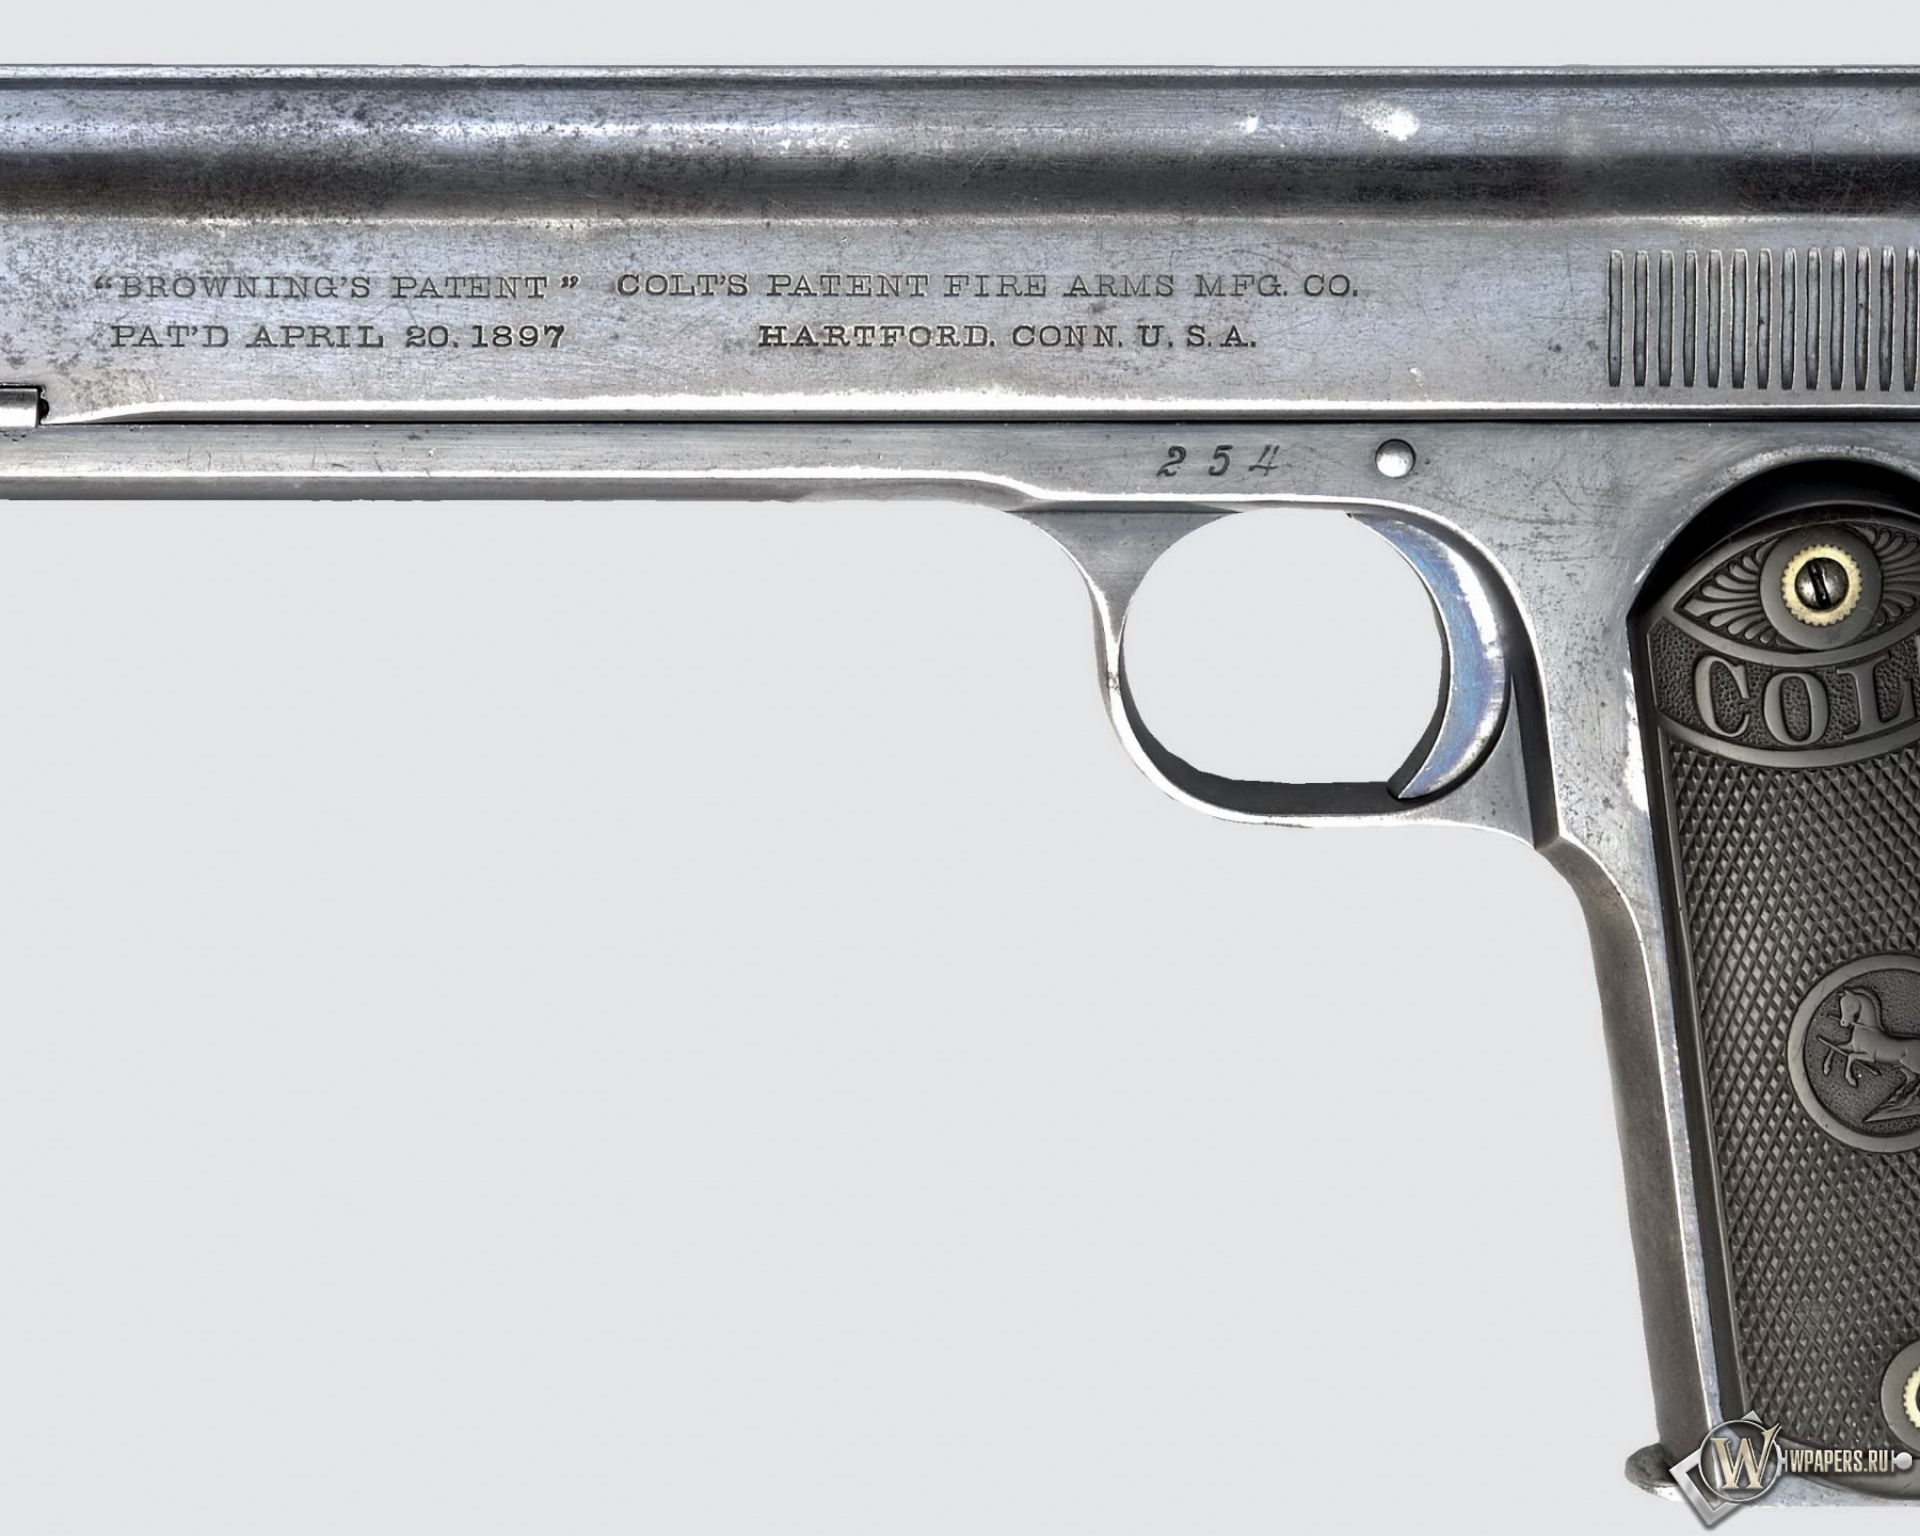 Colt M1900 automatic pistol 1920x1536